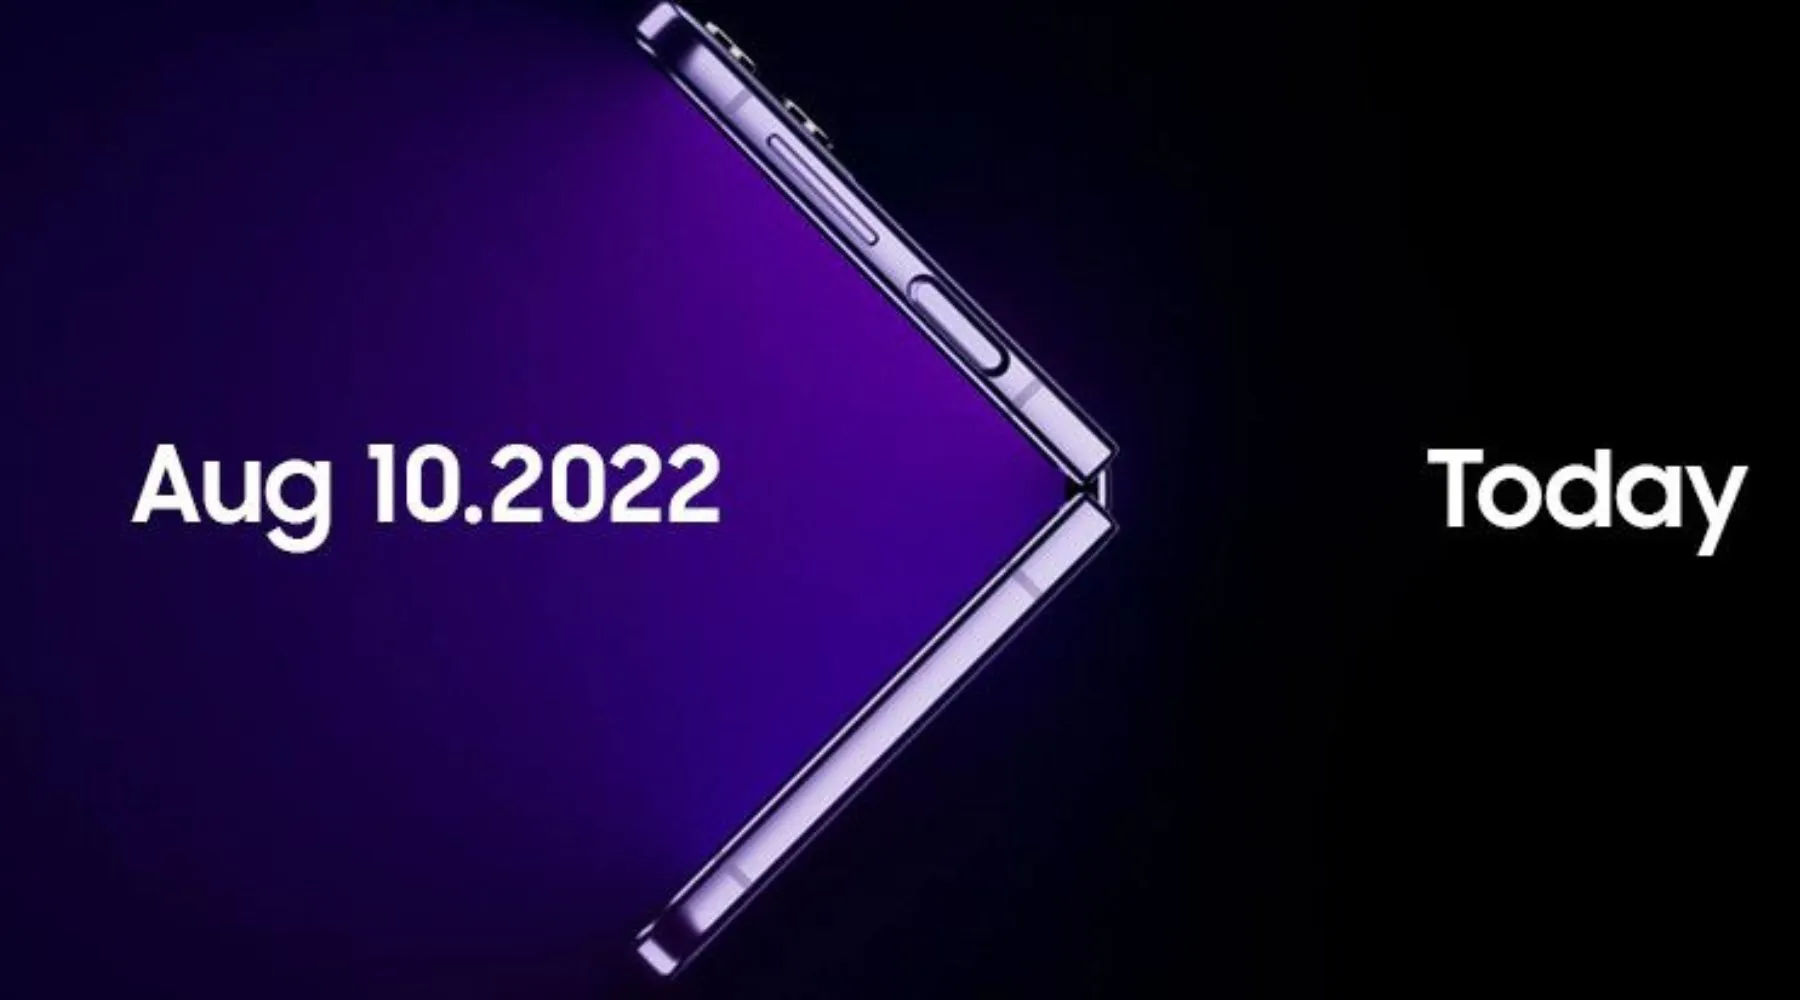 Samsungunpacked_Supplied_1800x1000